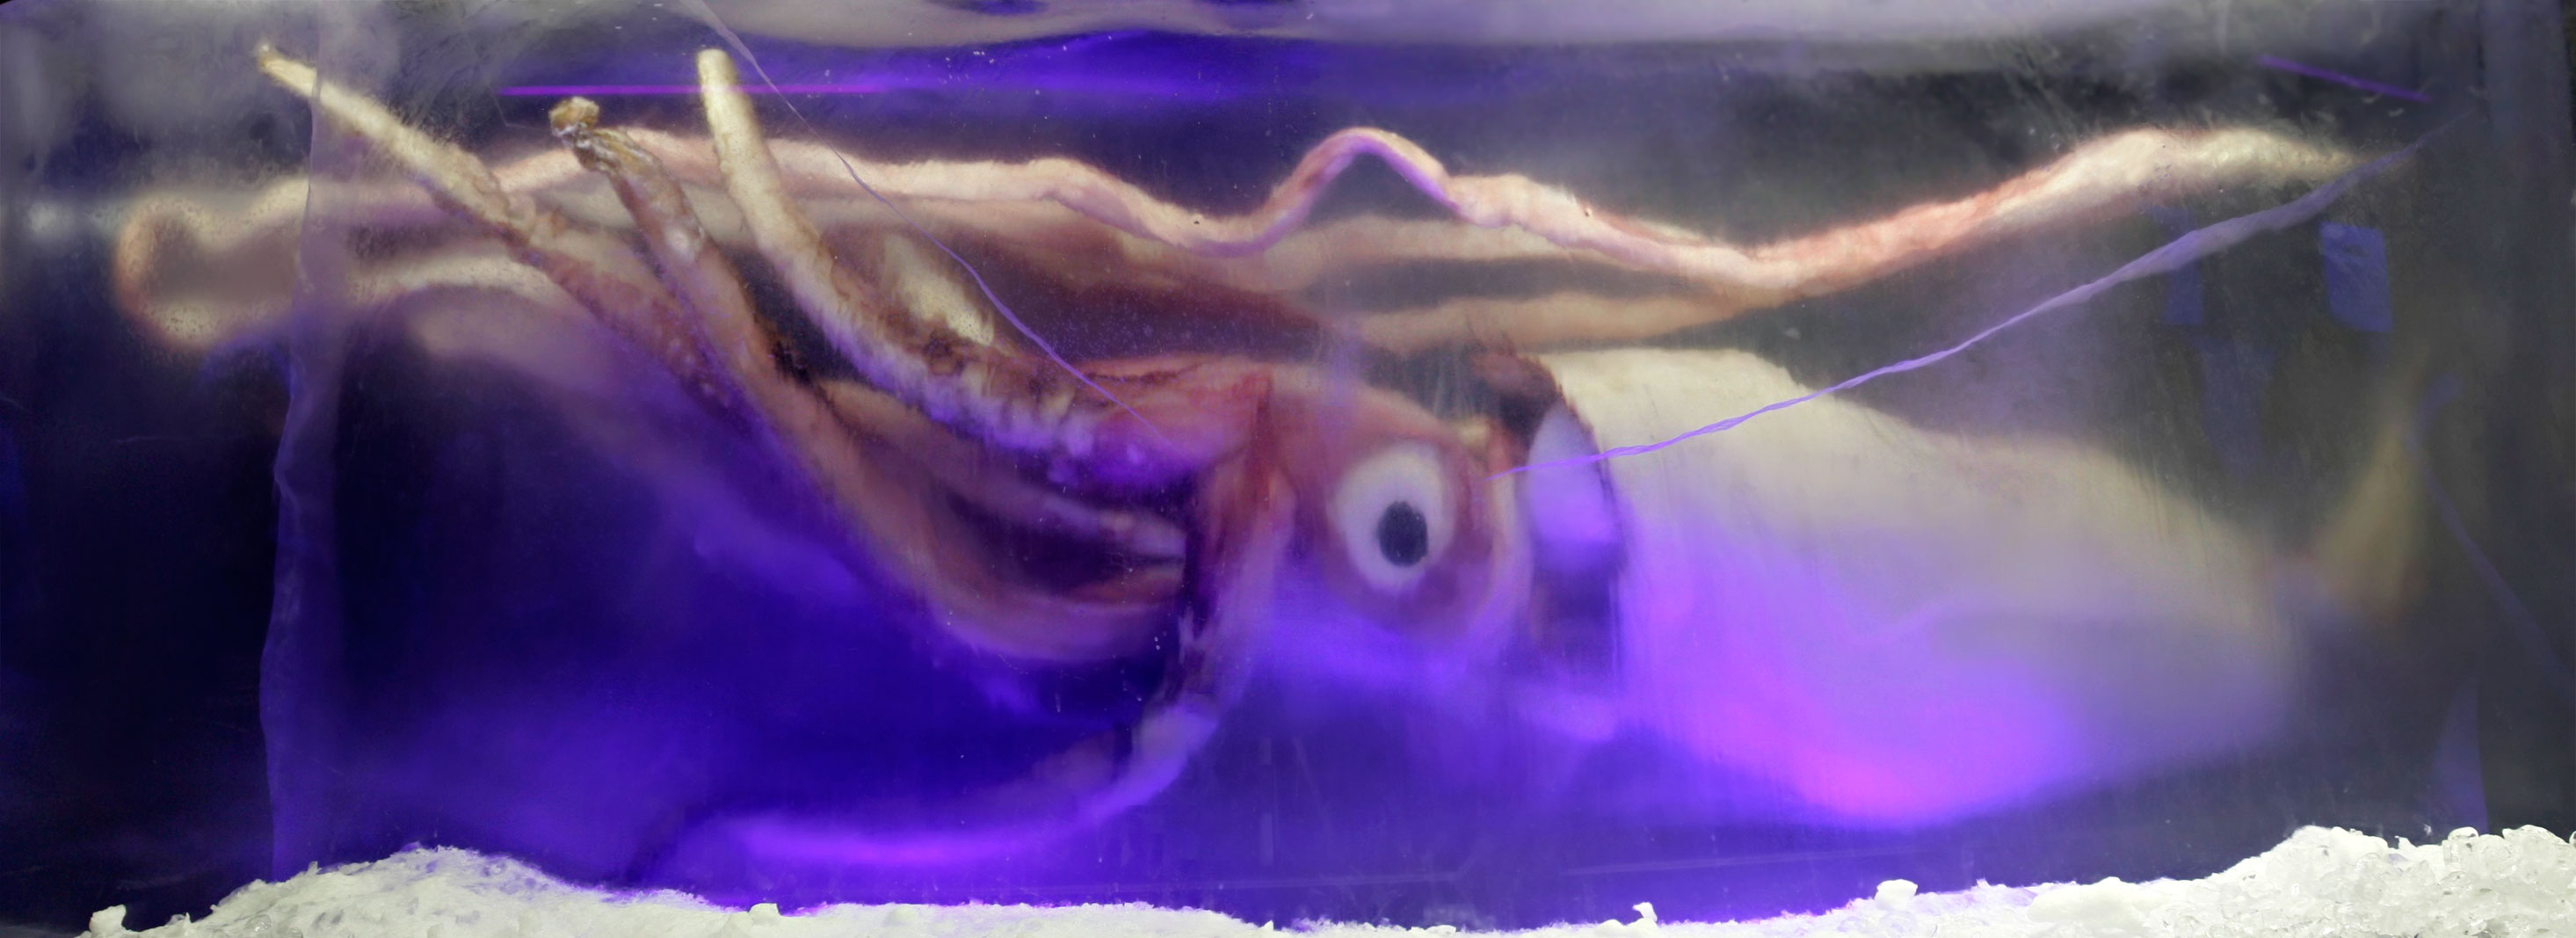 Giant_squid_melb_aquarium03 wiki.jpg